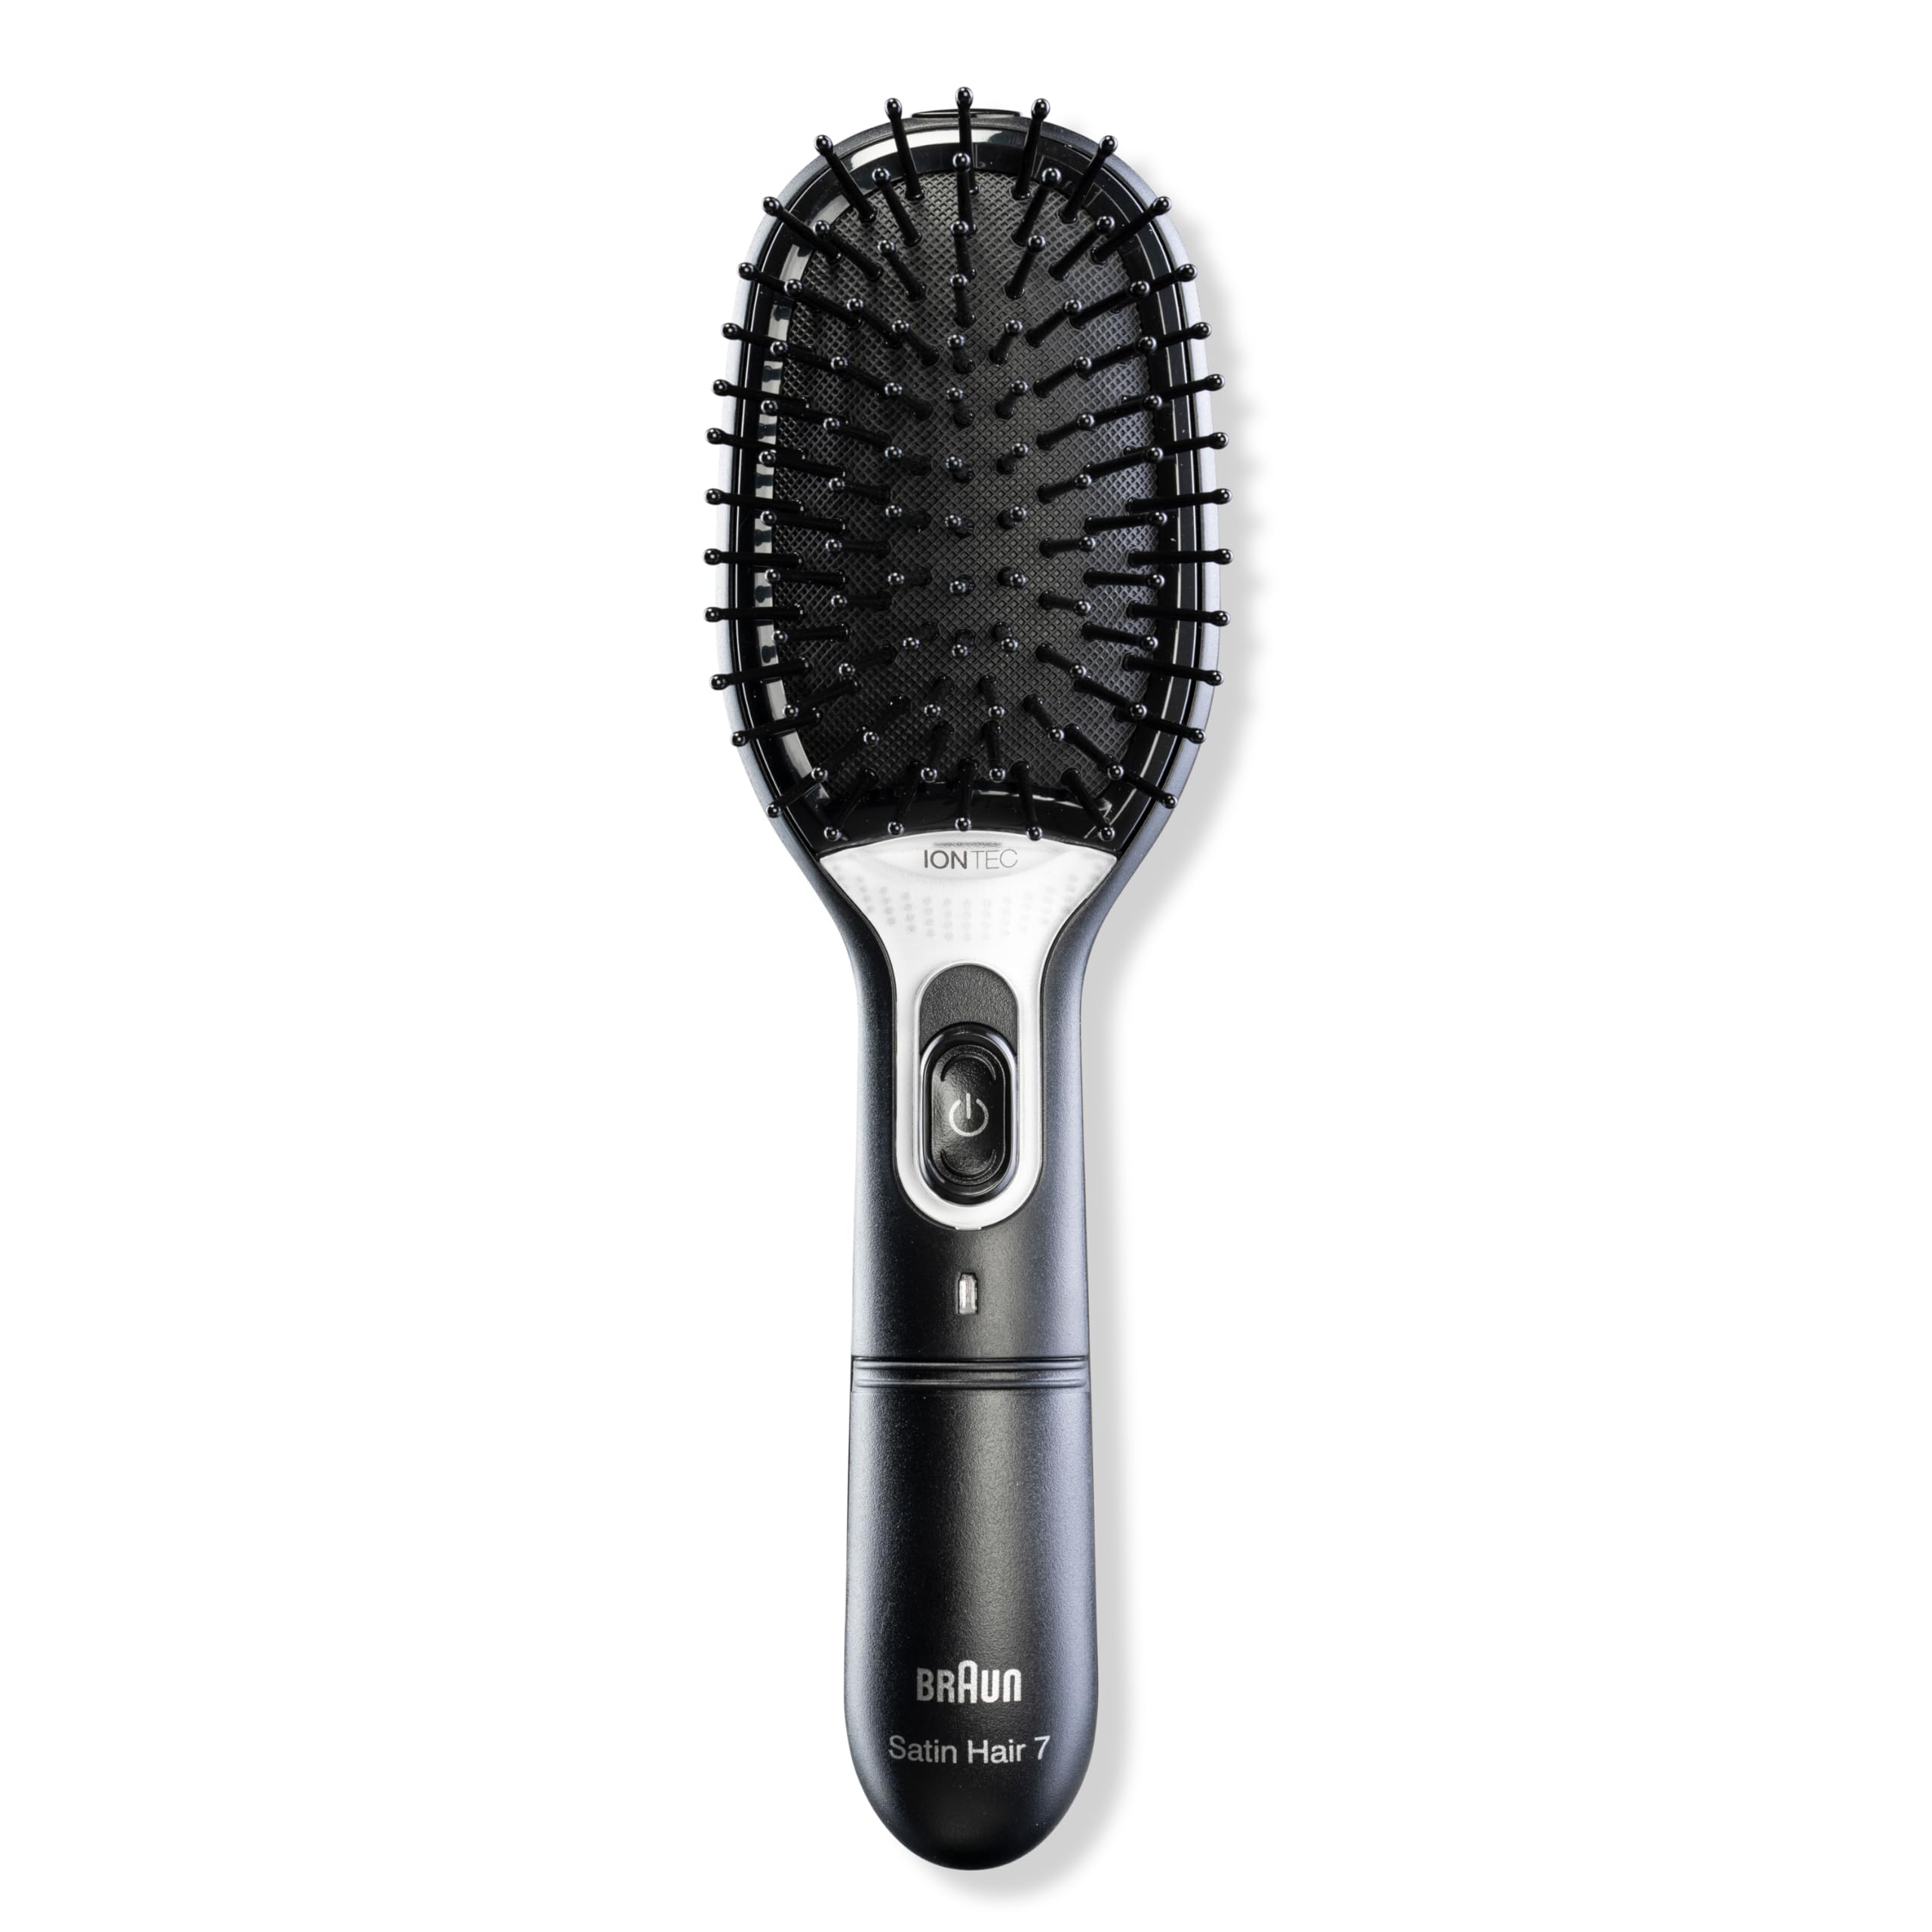 Braun Satin Hair 7 IONTEC Haarbürste, Haarbürste mit Ionentechnologie zur Förderung des Glanzes, BR710, schwarz